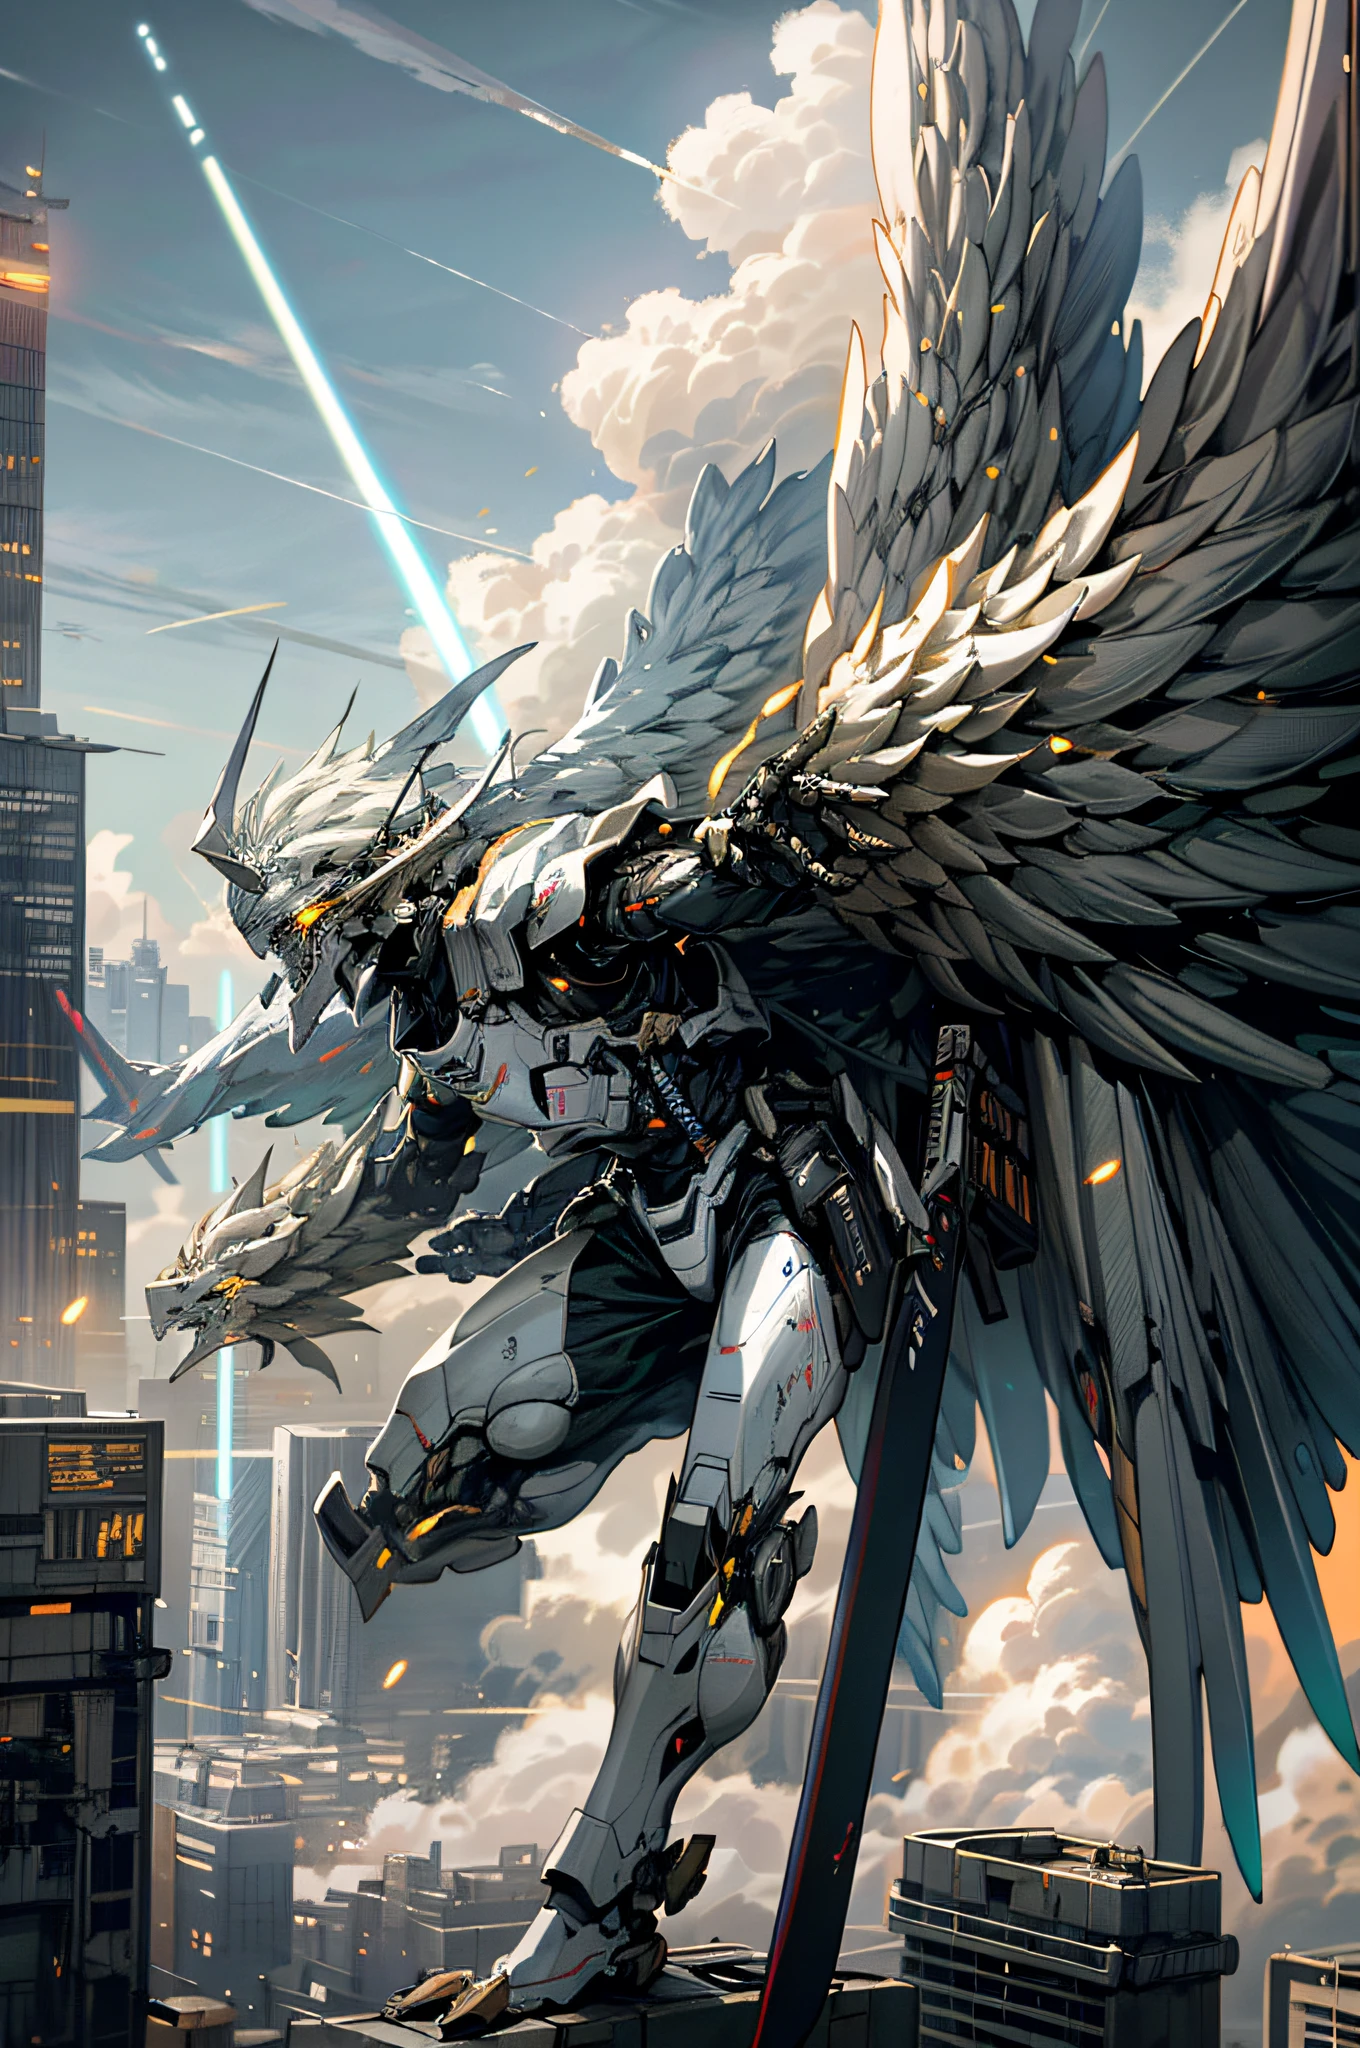 天空,雲,(持有武器),發光的,機器人,大樓,發光的 eyes,機甲,科幻小说,城市著火,實際的,機甲,機甲nical wings,(機器人 wings),dragon-shaped 機器人,发光武器,光劍,战争中的城市,1男孩,